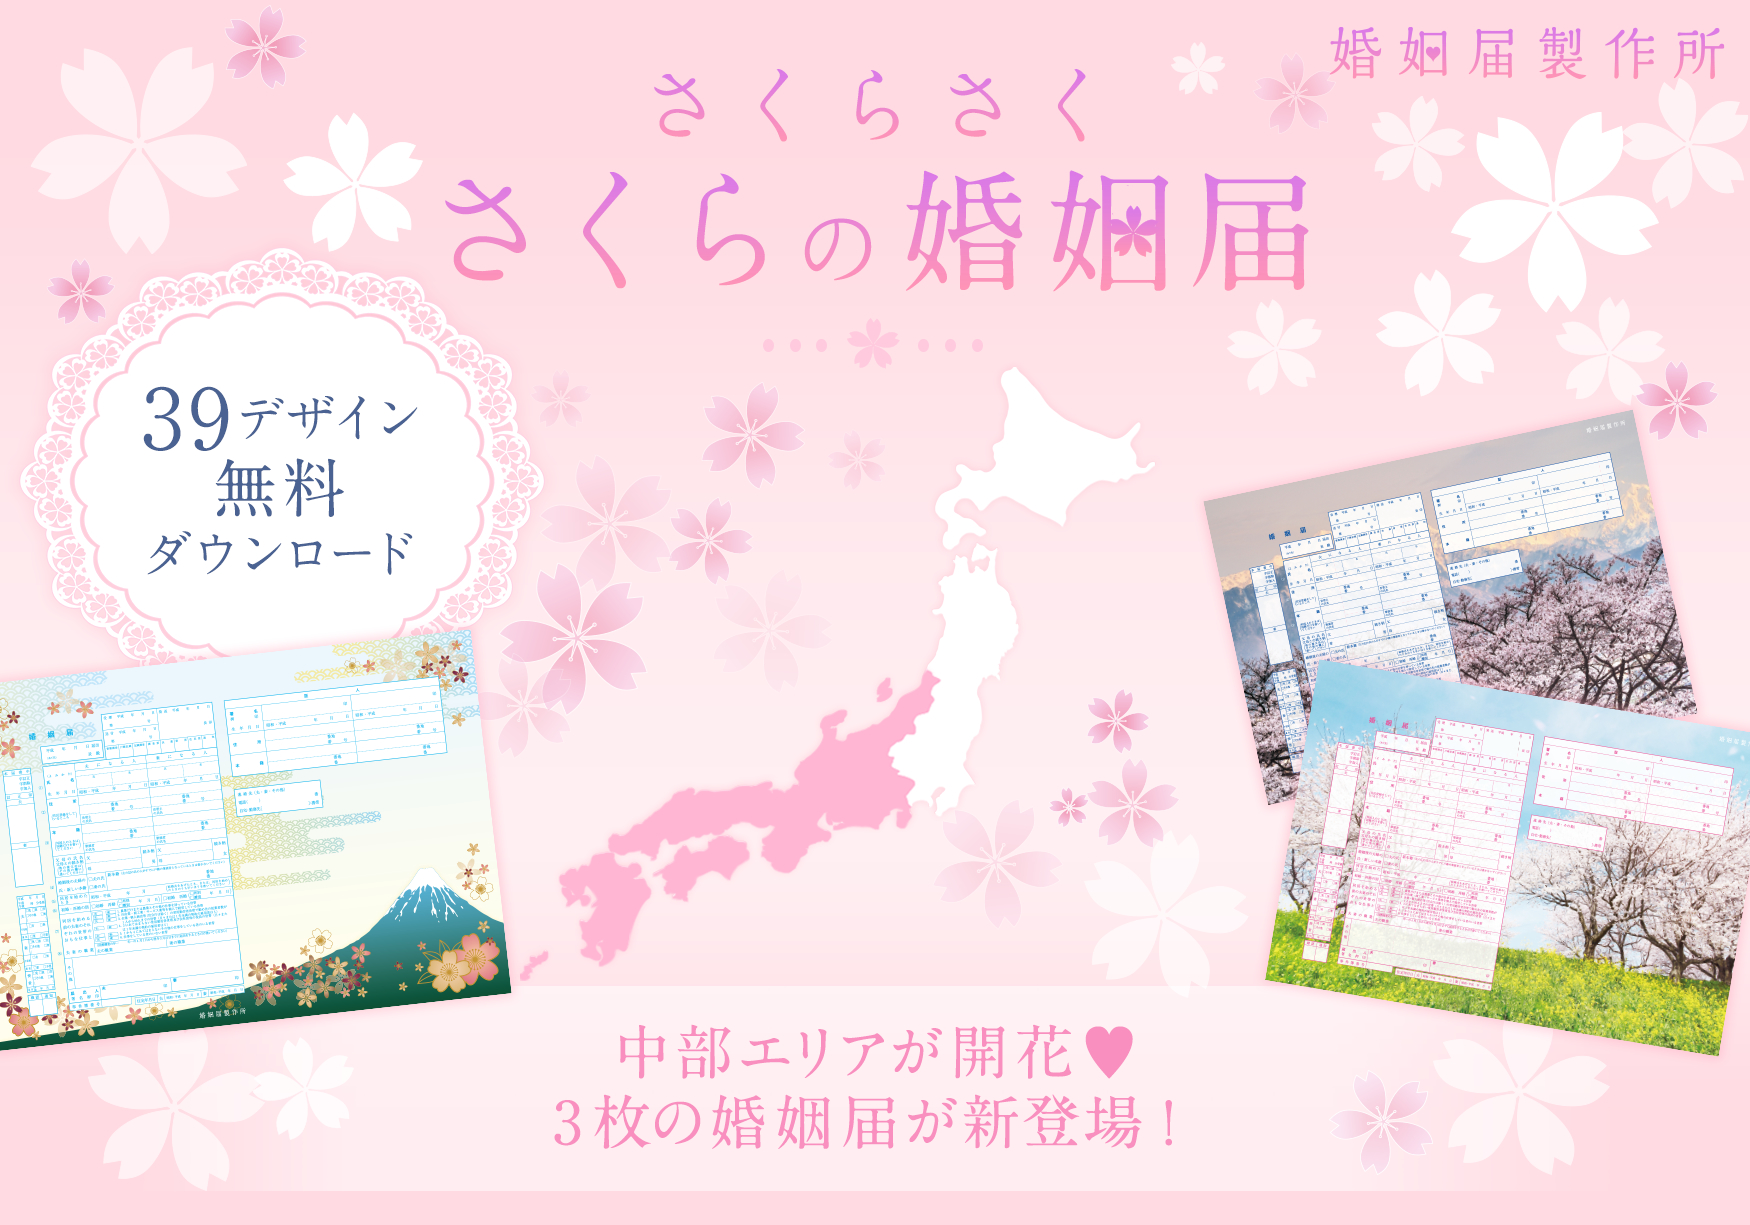 名古屋のさくらが開花 さくらの婚姻届 無料キャンペーンに中部地方をイメージした３デザインが新登場 株式会社メイションのプレスリリース